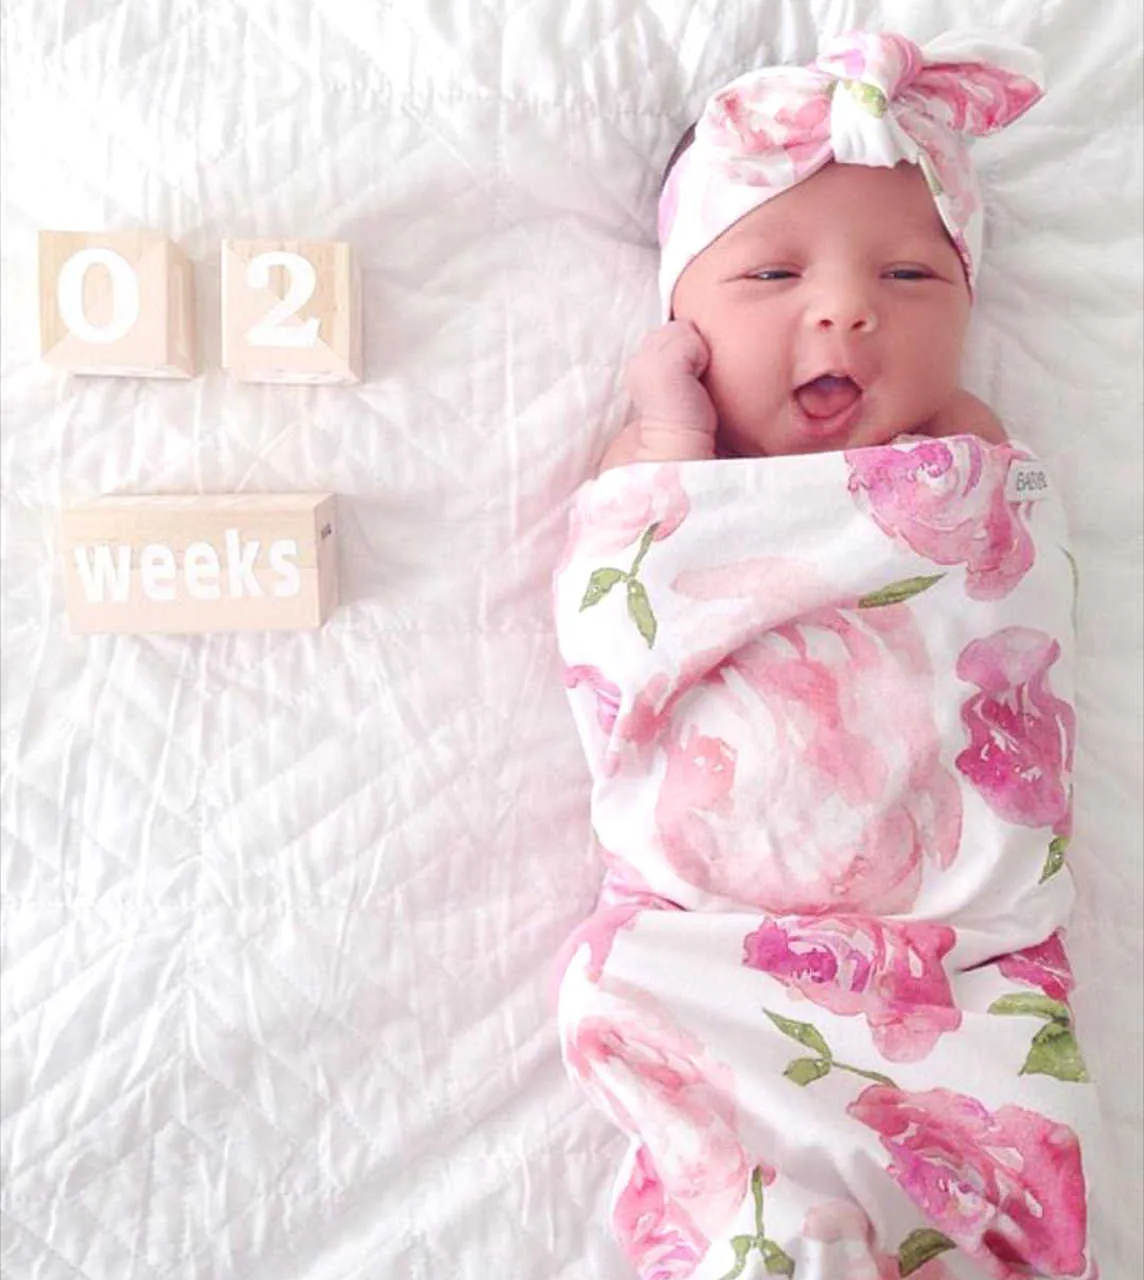 Puckdecken Neugeborenen Bunny Baby Ohr Stirnbänder Infant Floral Swaddle Wrap Decke Haarbänder Baumwolle Tuch Set Für Kleinkind